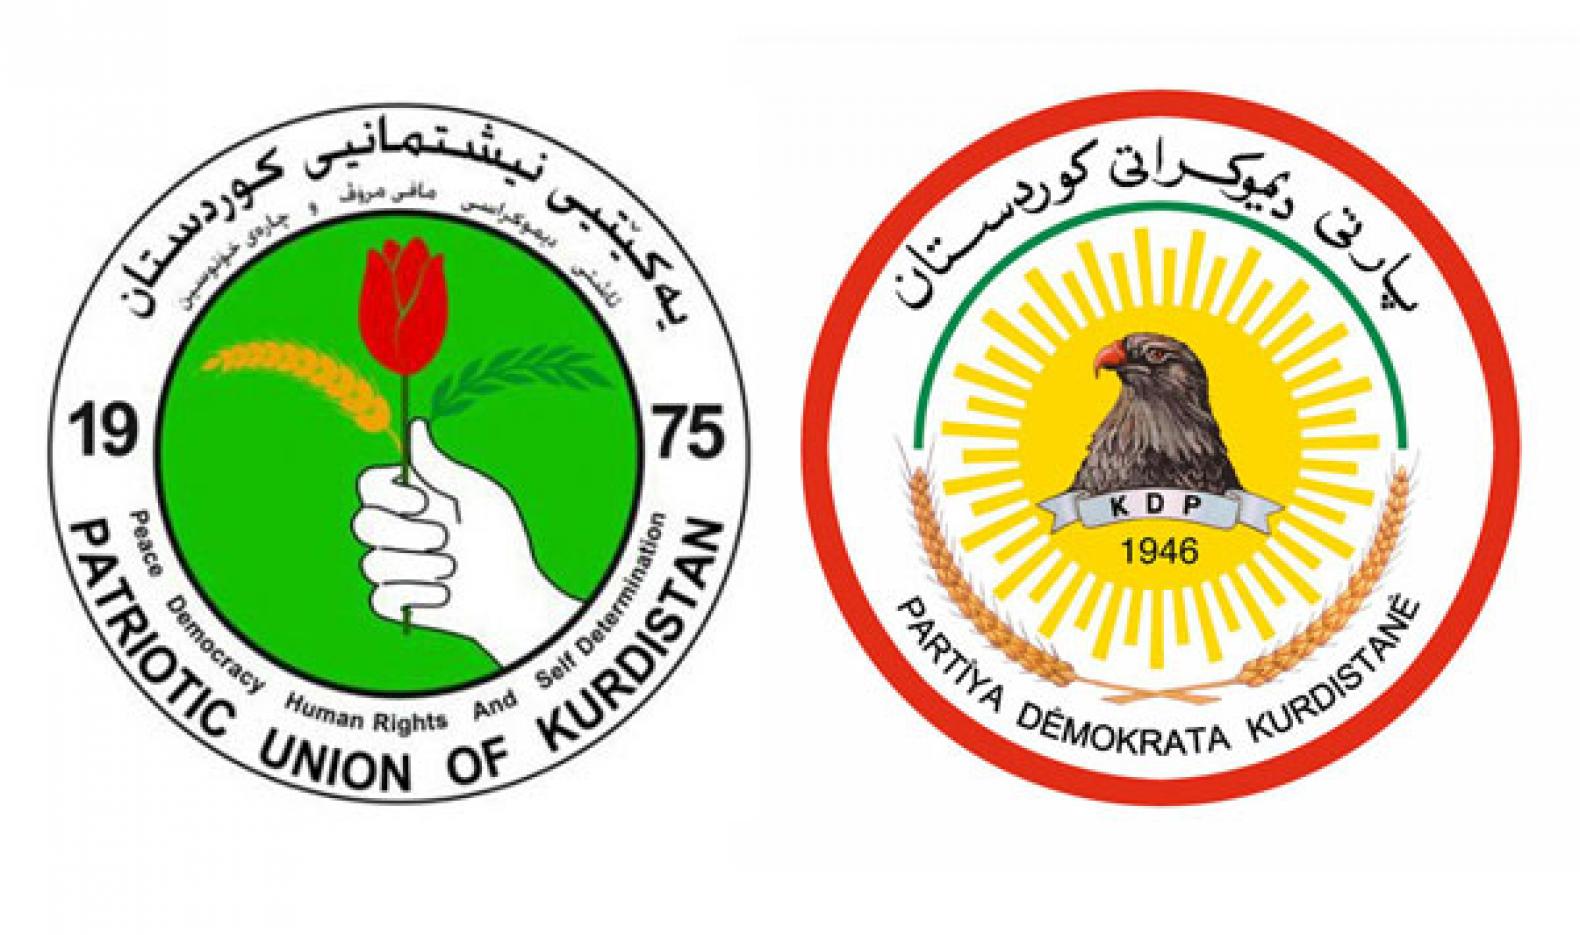 امريكا تؤكد على ضرورة وحدة الصف الكوردي وتطوير المصالح المشتركة مع كوردستان والعراق